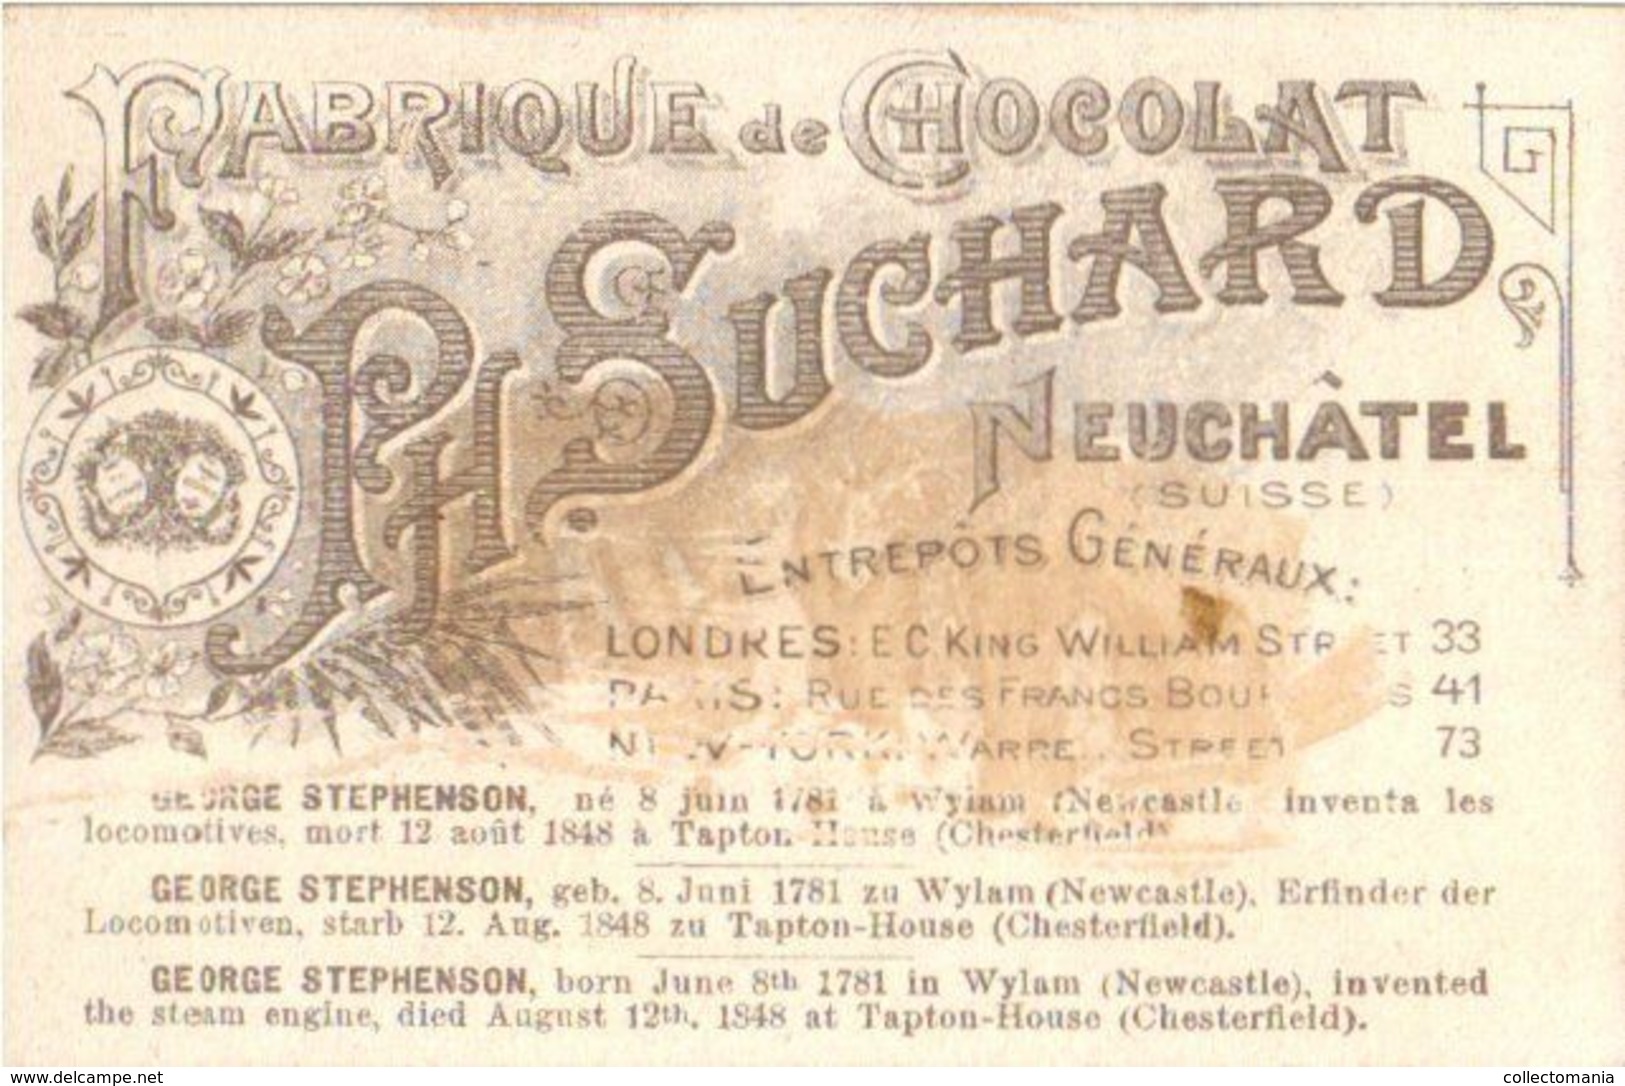 6 chromo litho cards chocolate SUCHARD set 54 B c1896  Stephenson Morse Daguerre Pasteur Rontgen Howe